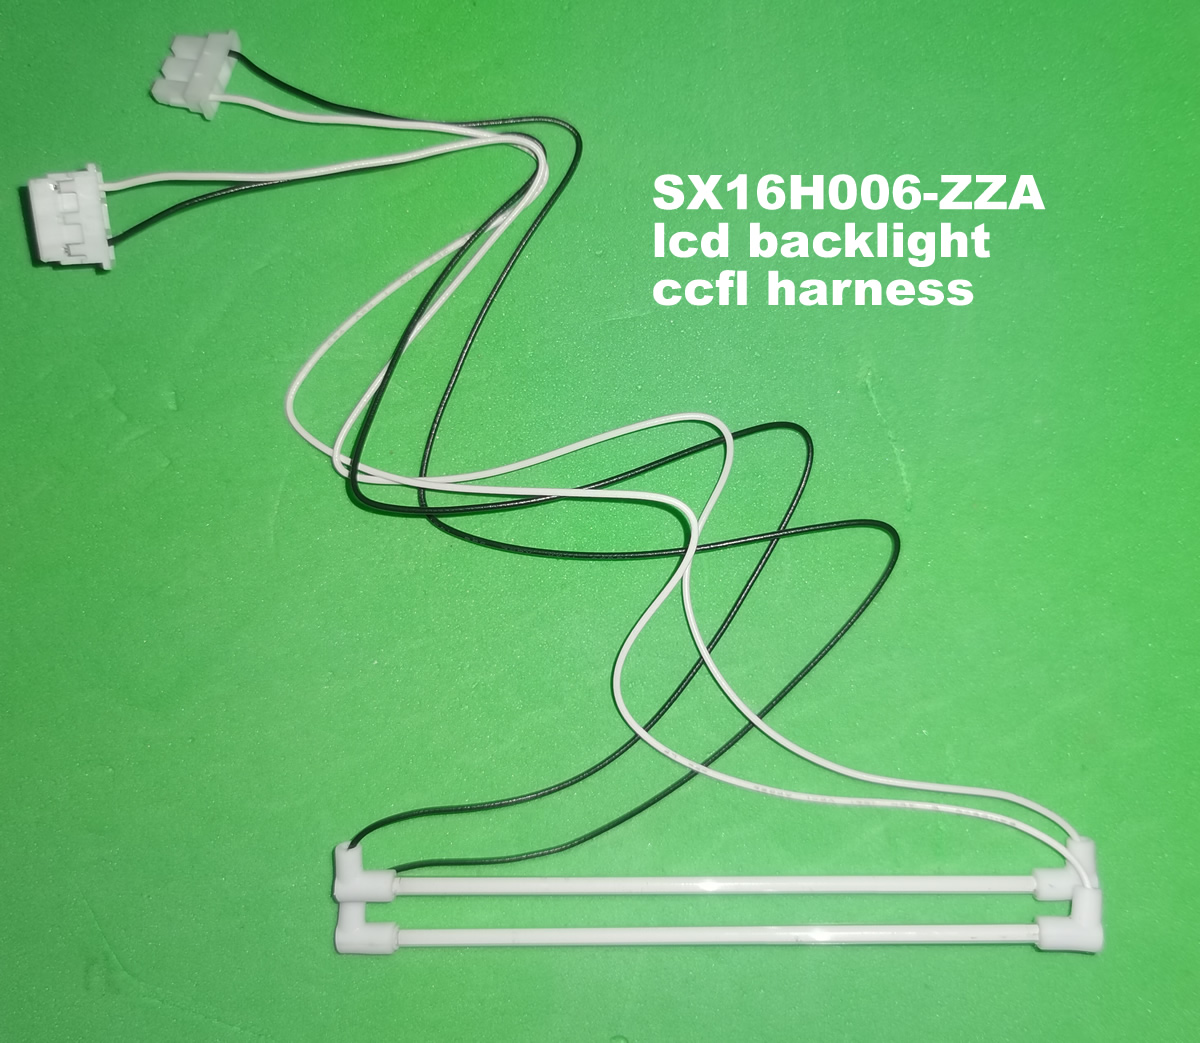 SX16H006-ZZA lcd backlight ccfl harness